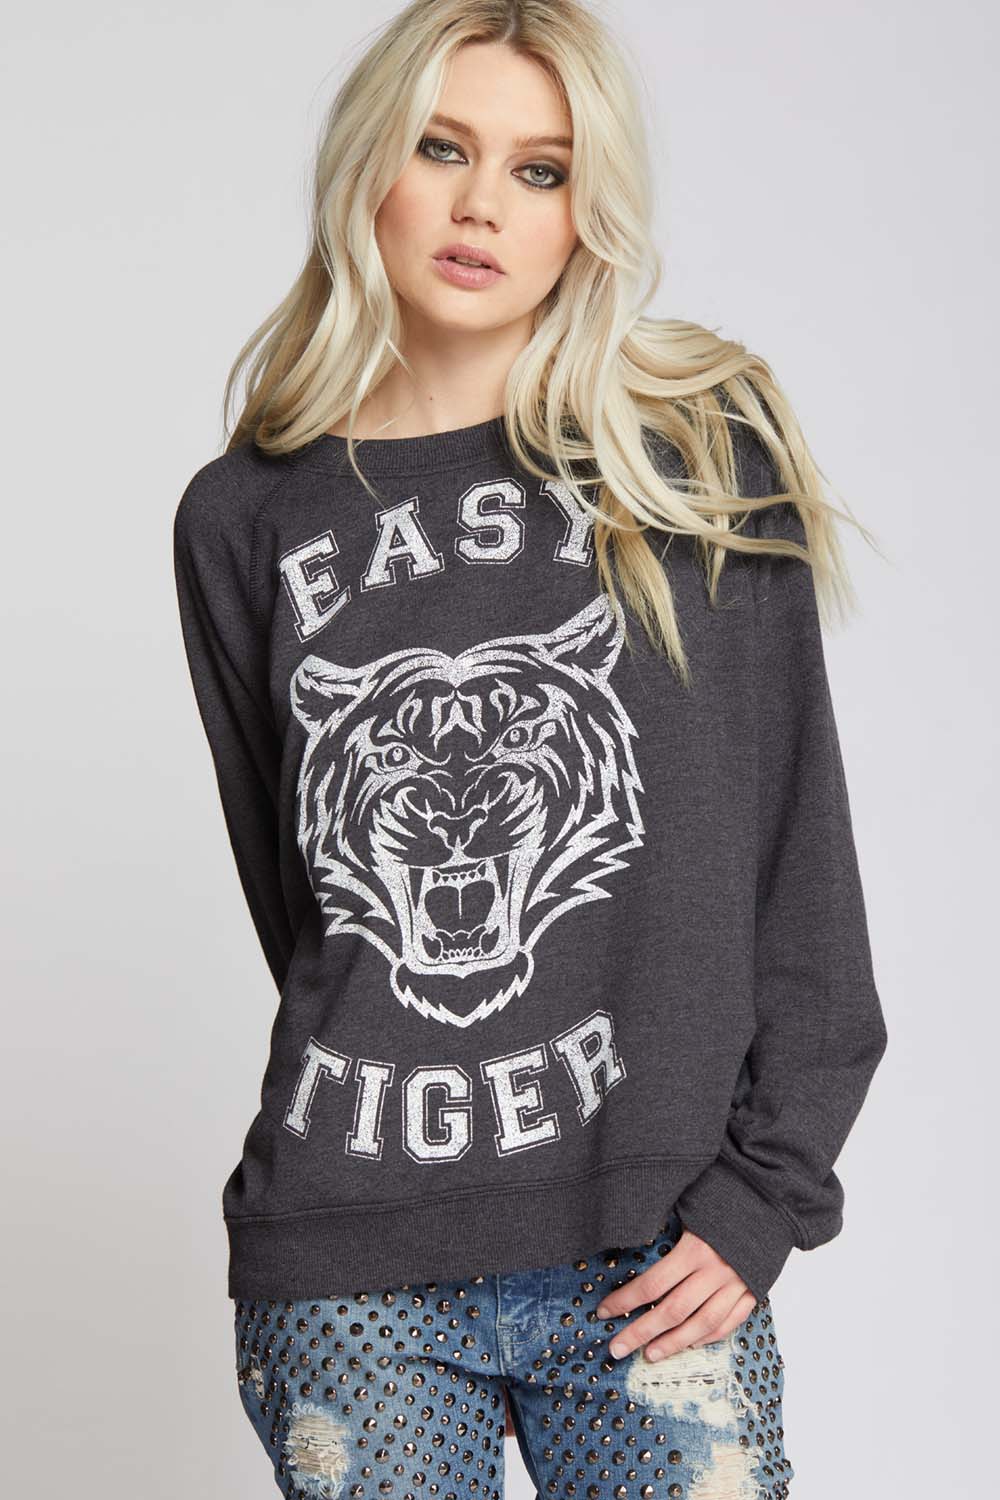 Easy Tiger Vintage Sweatshirt - Recycled Karma Brands